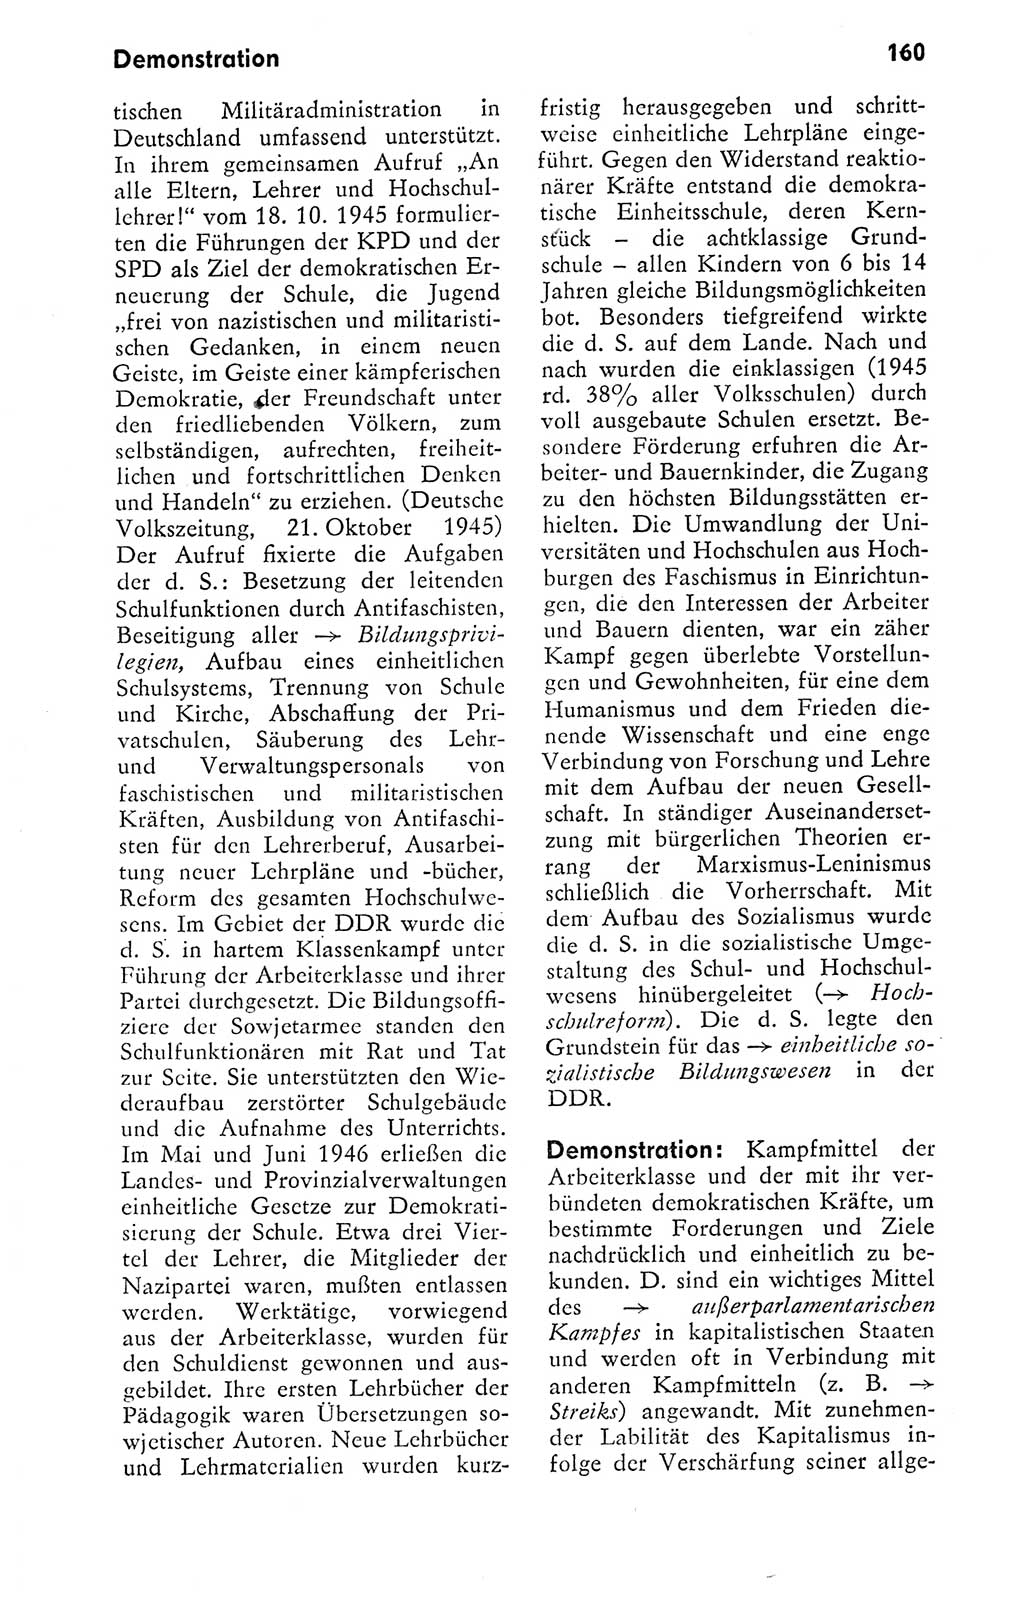 Kleines politisches Wörterbuch [Deutsche Demokratische Republik (DDR)] 1978, Seite 160 (Kl. pol. Wb. DDR 1978, S. 160)